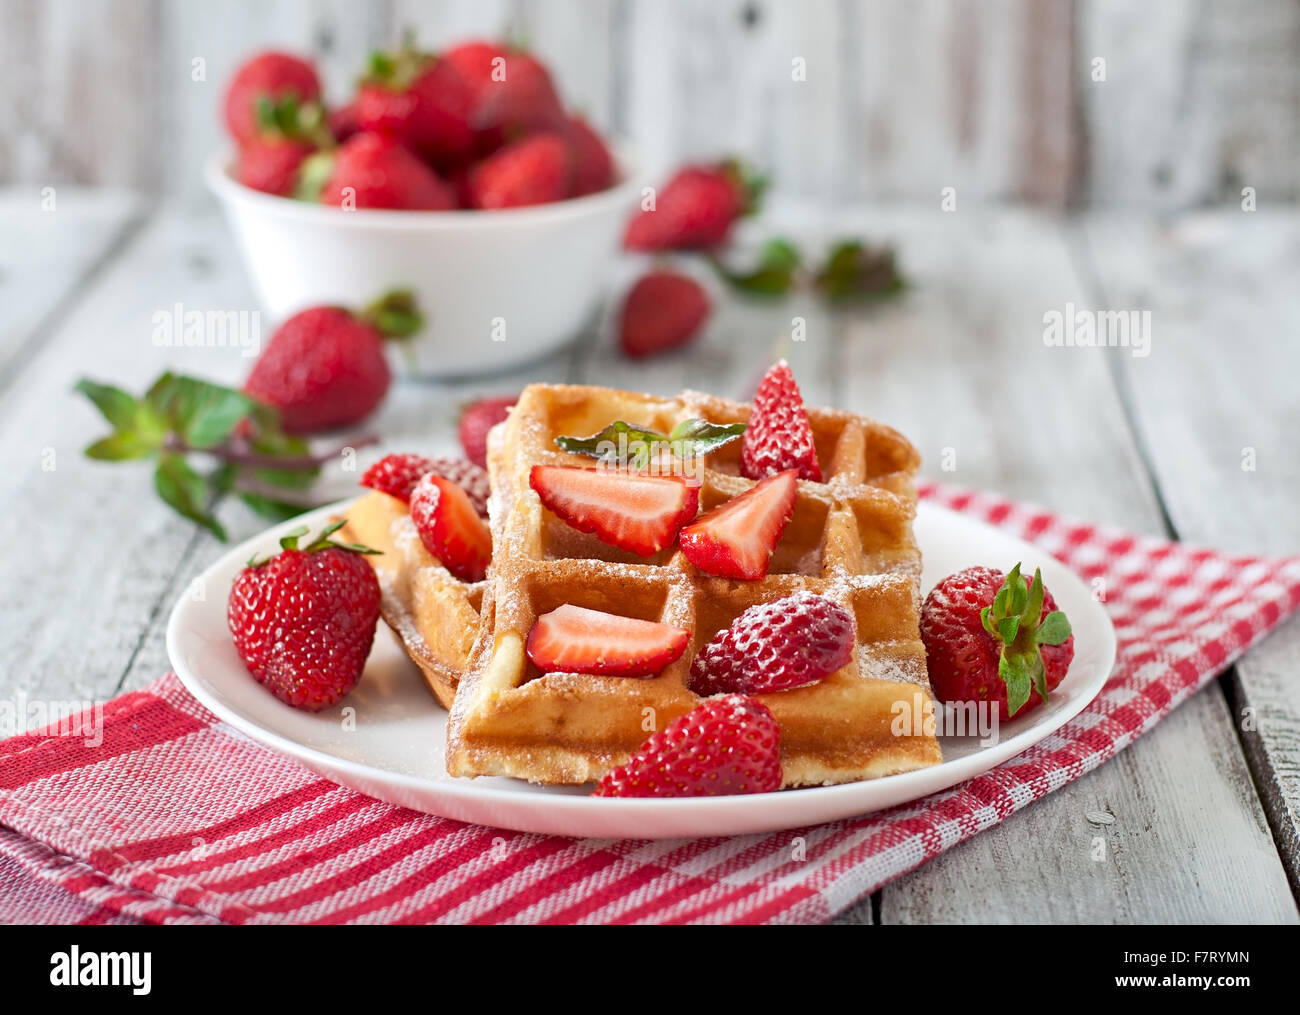 Belgique gaufres aux fraises et menthe sur plaque blanche. Banque D'Images